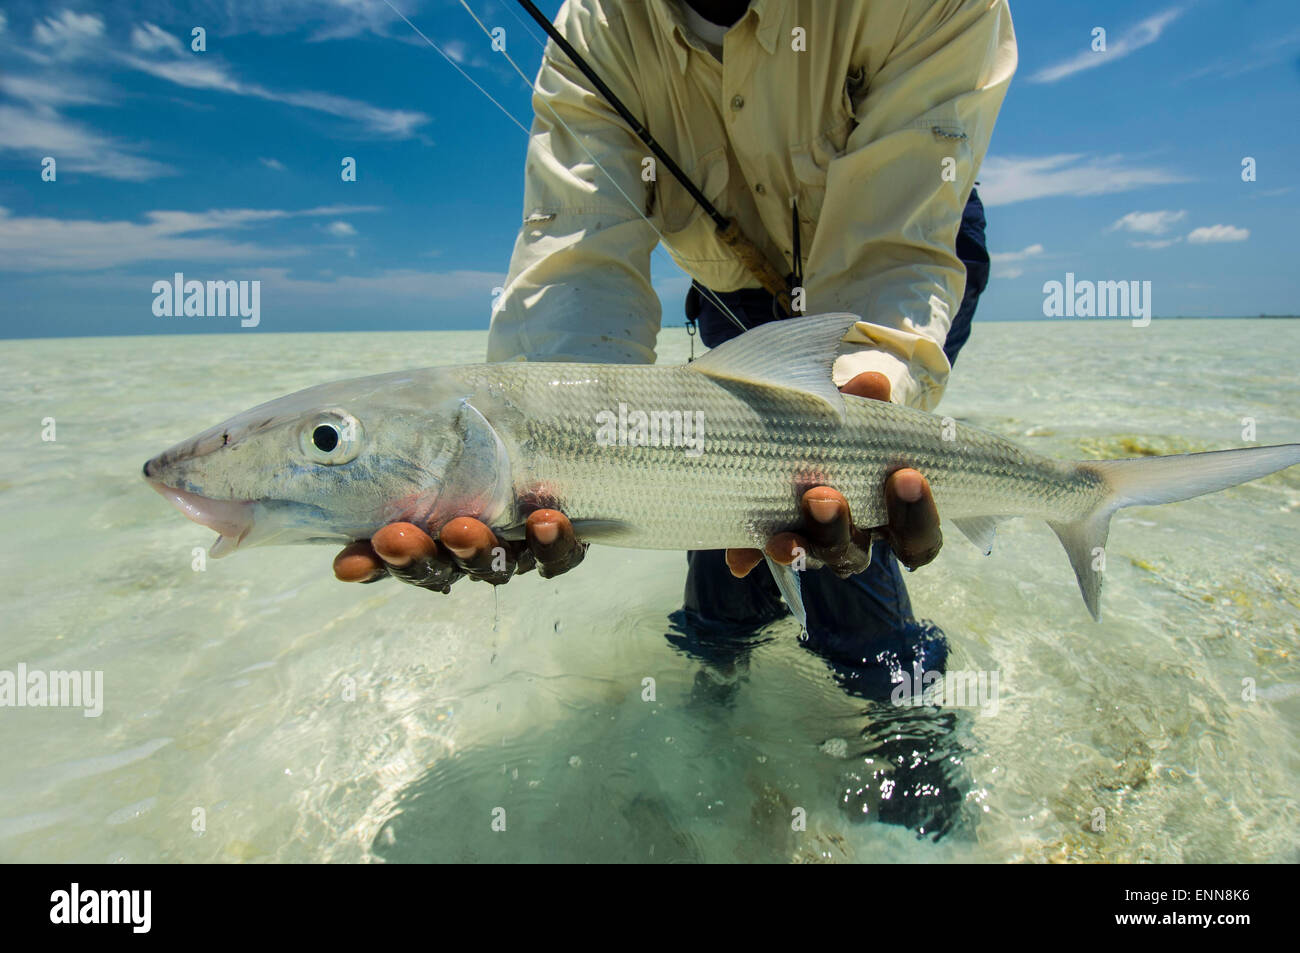 Fly fishing in the Bahamas Stock Photo